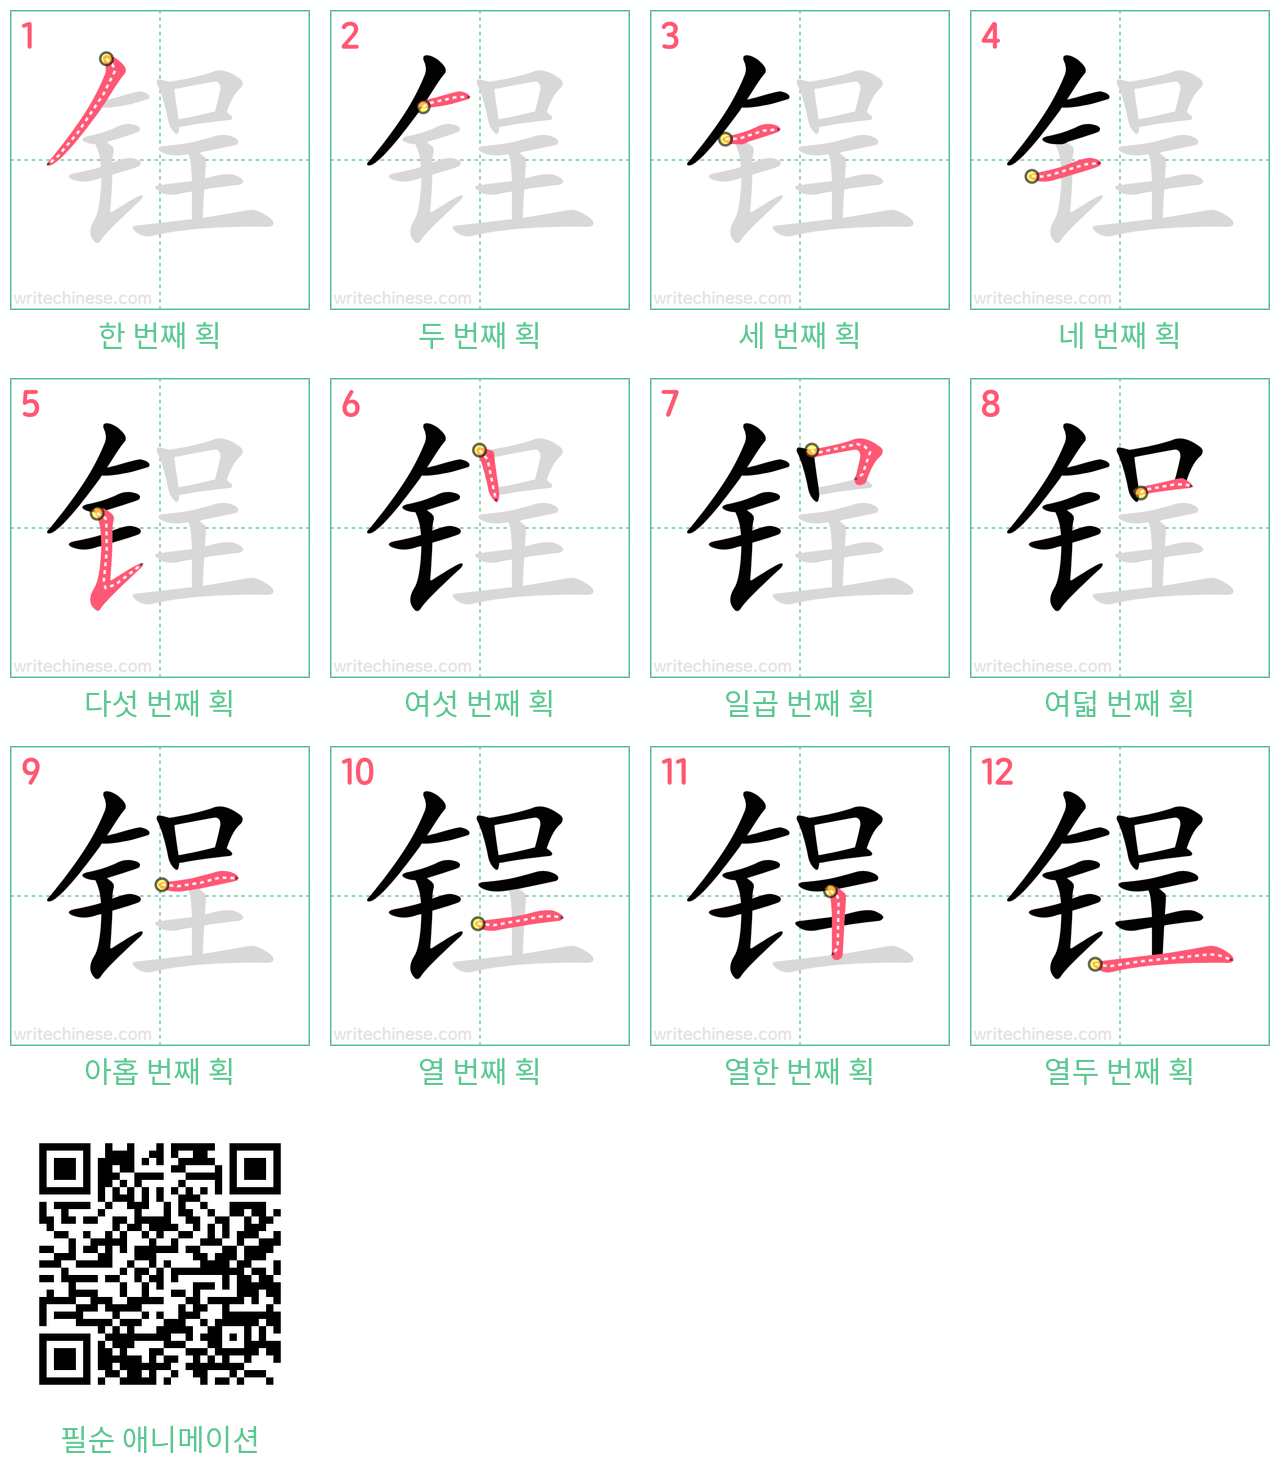 锃 step-by-step stroke order diagrams